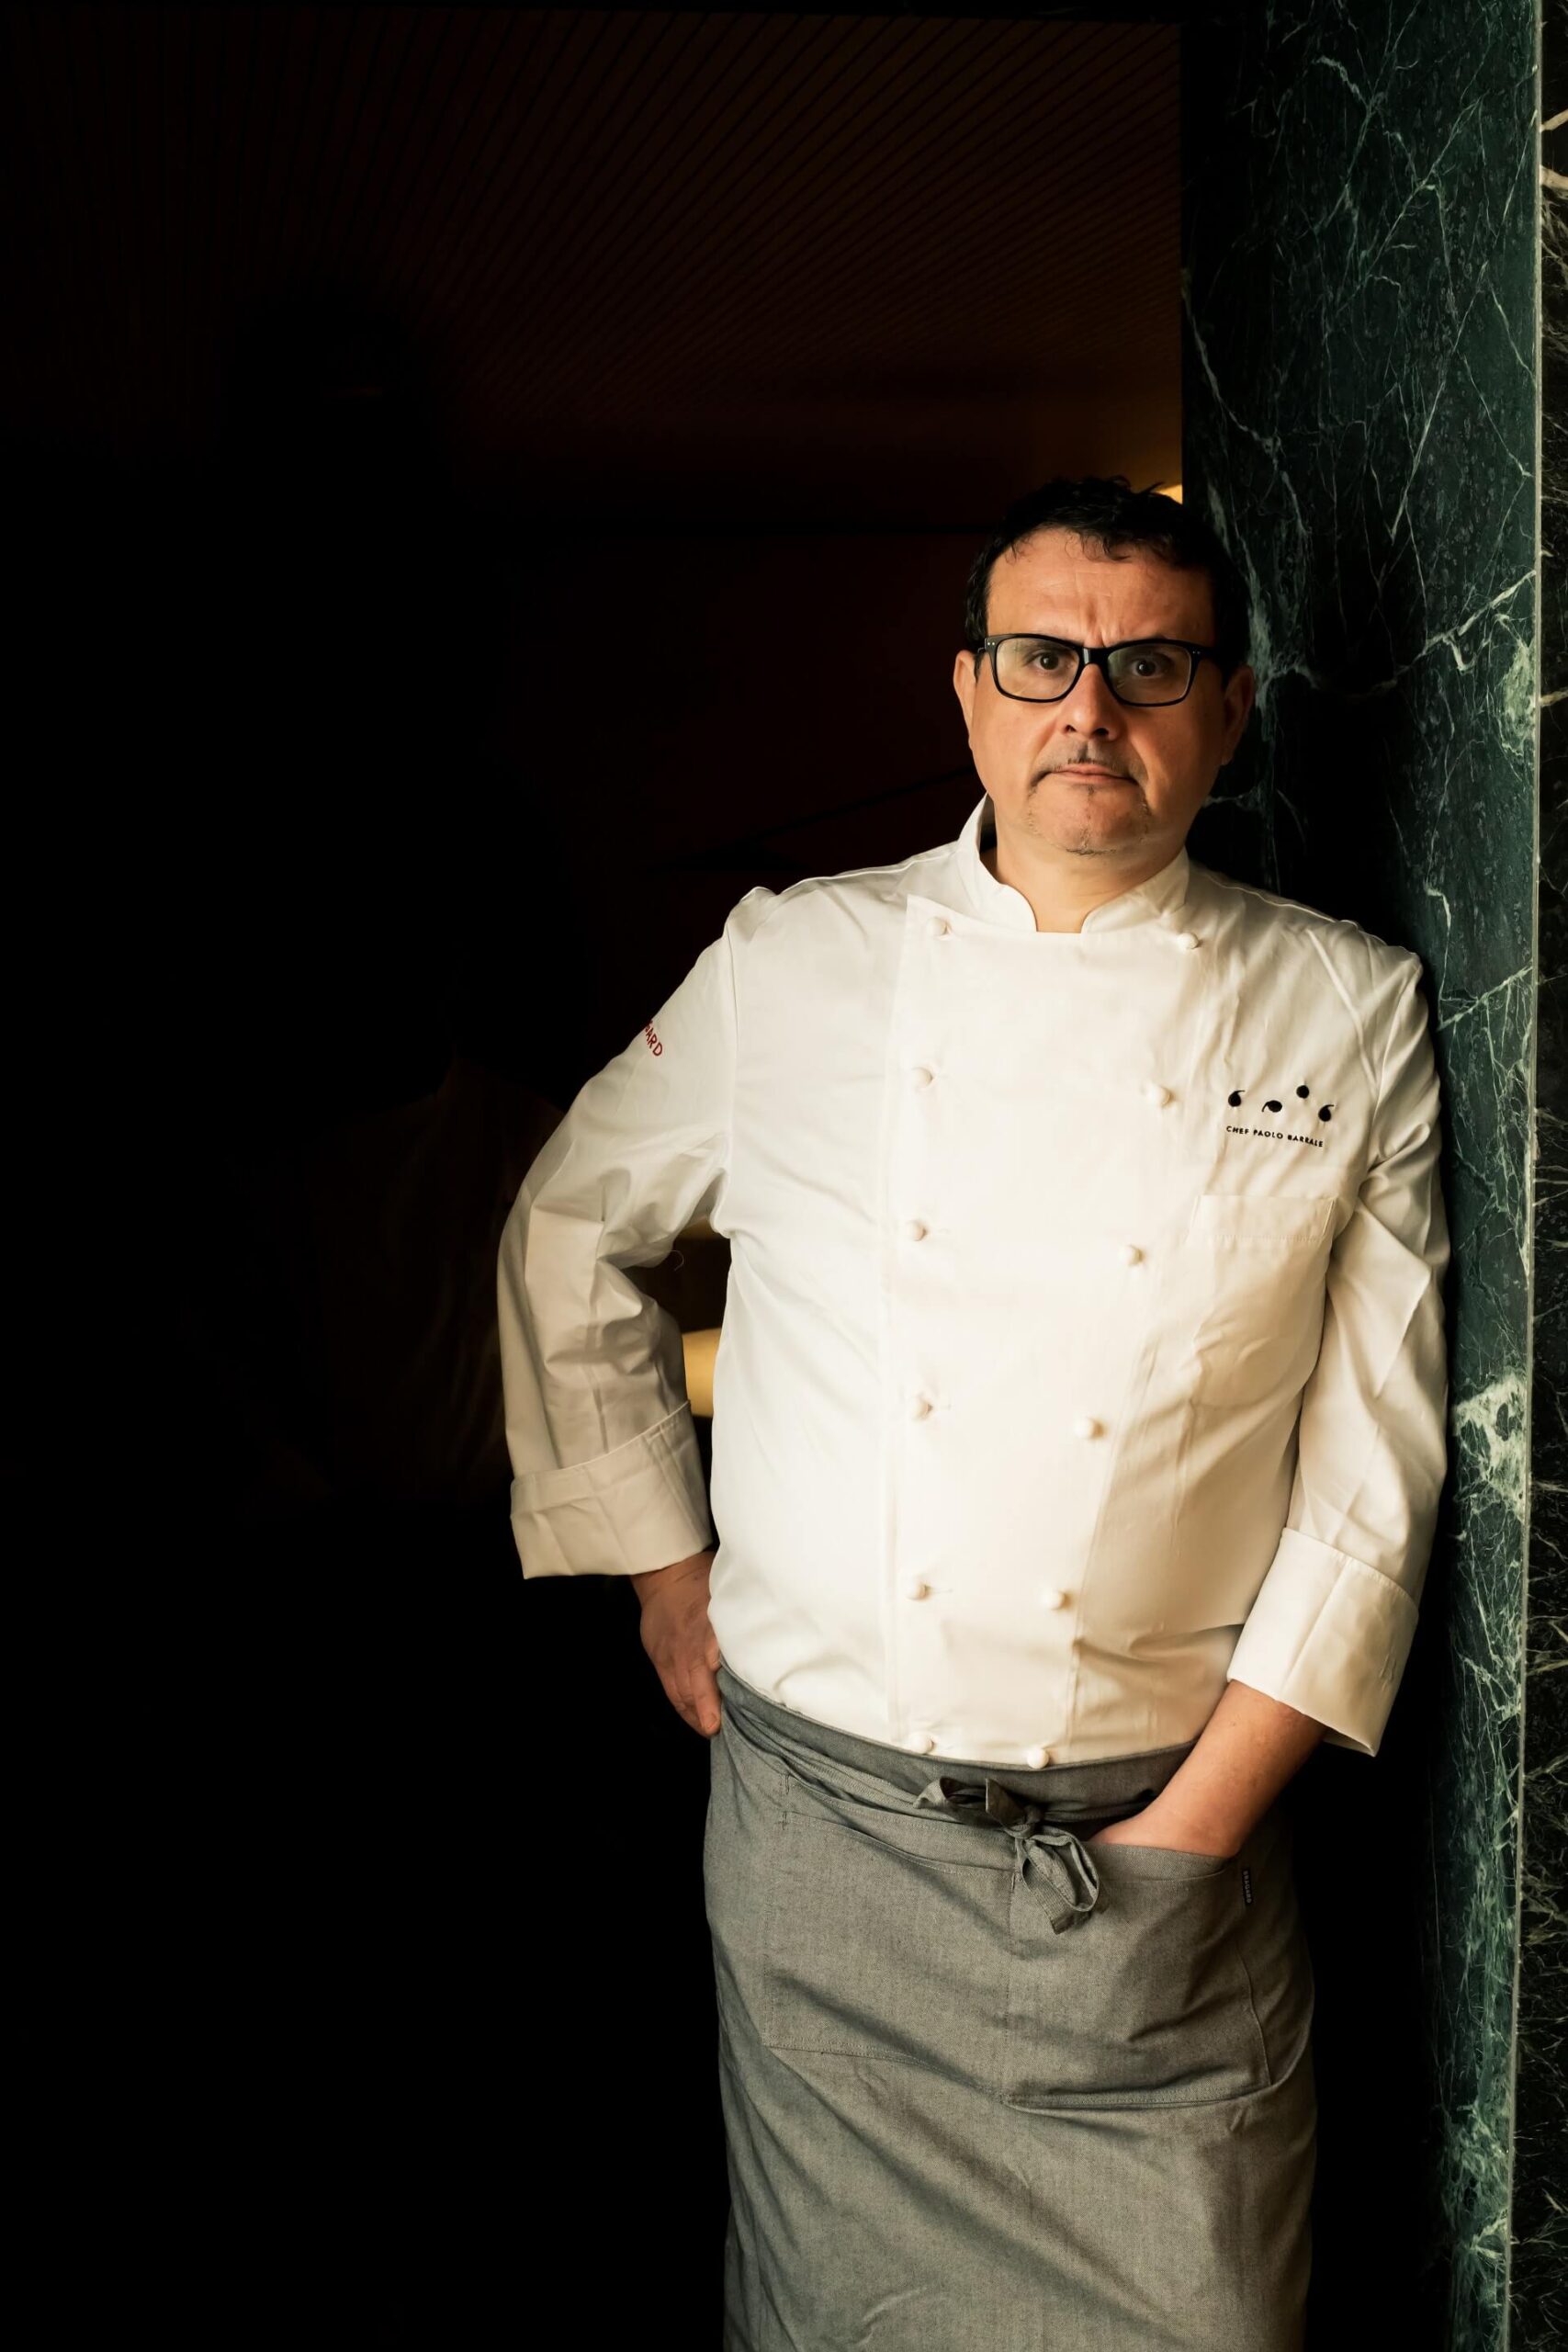 Chef Paolo Barrale